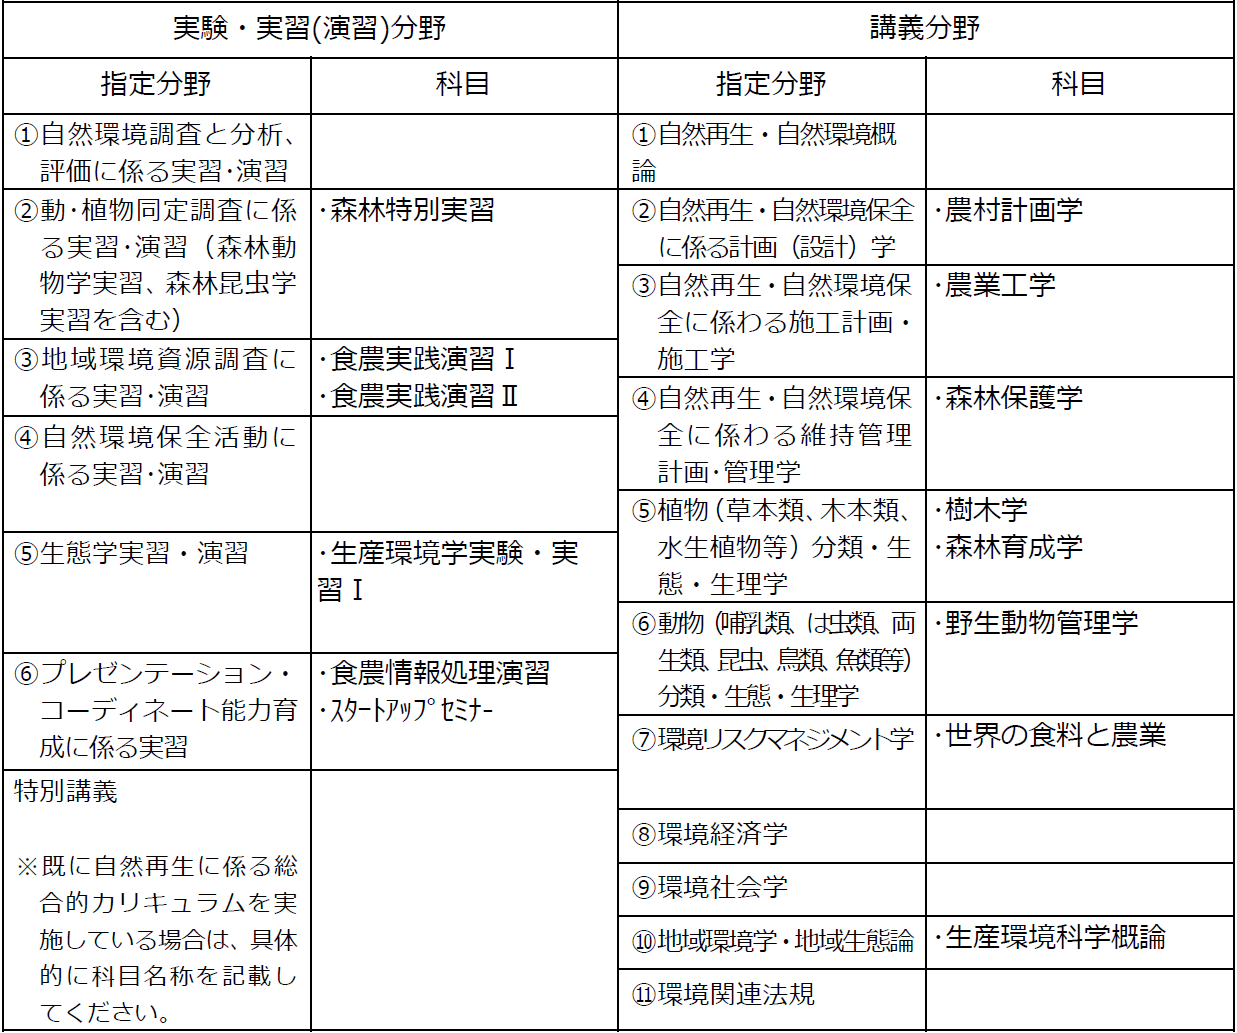 http://kyoumu.adb.fukushima-u.ac.jp/guide/2020/agri/Files/2021/03/702f544b1b5b2e77c1bdce0e99c273d3.png